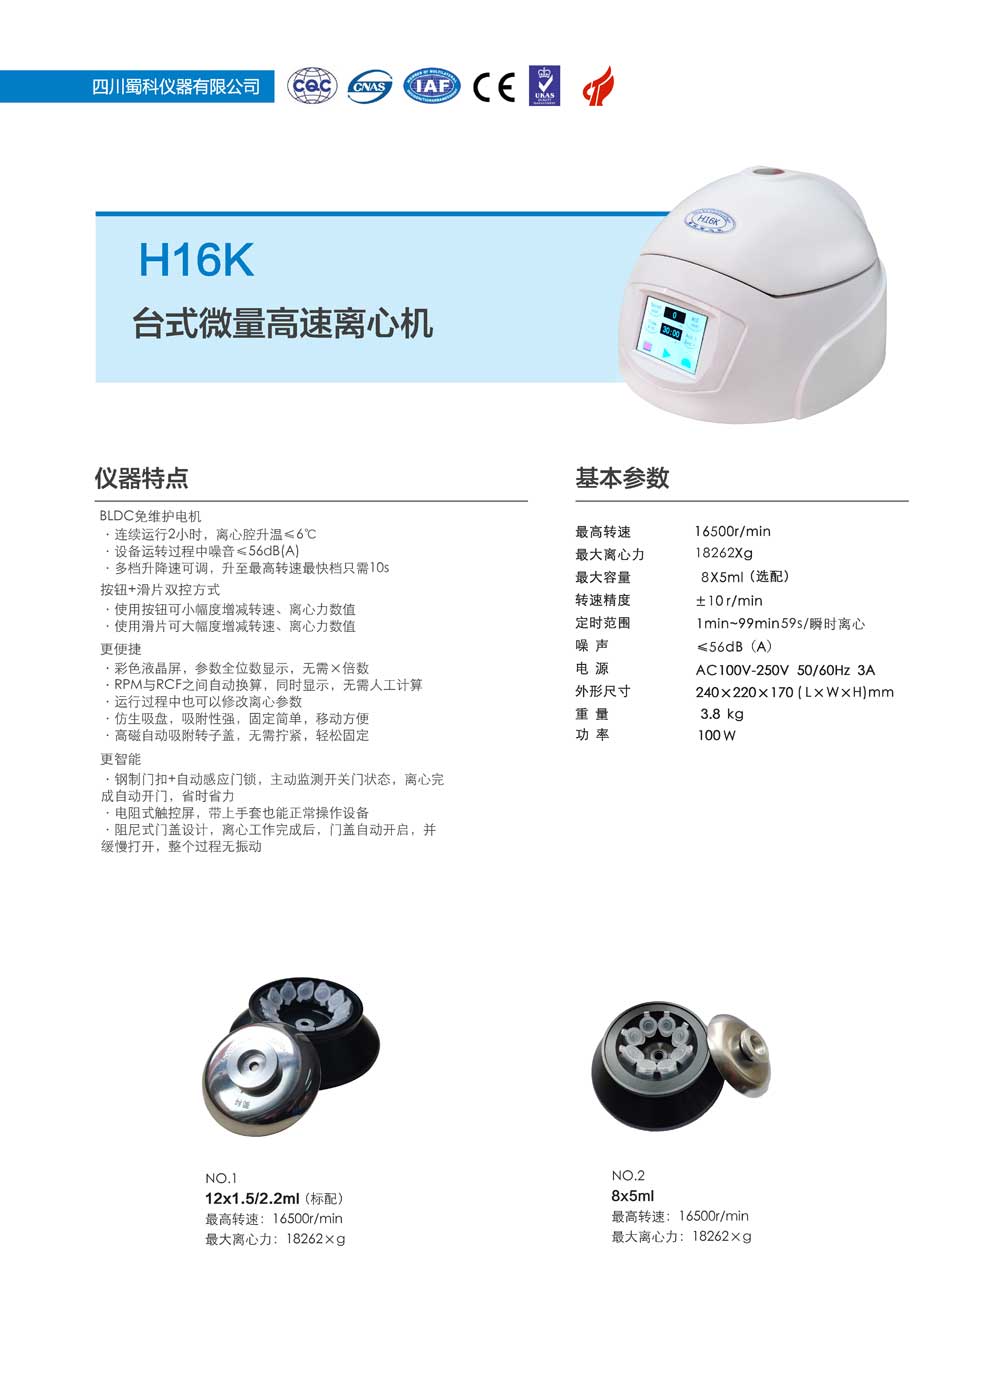 H16K-台式-彩页.jpg